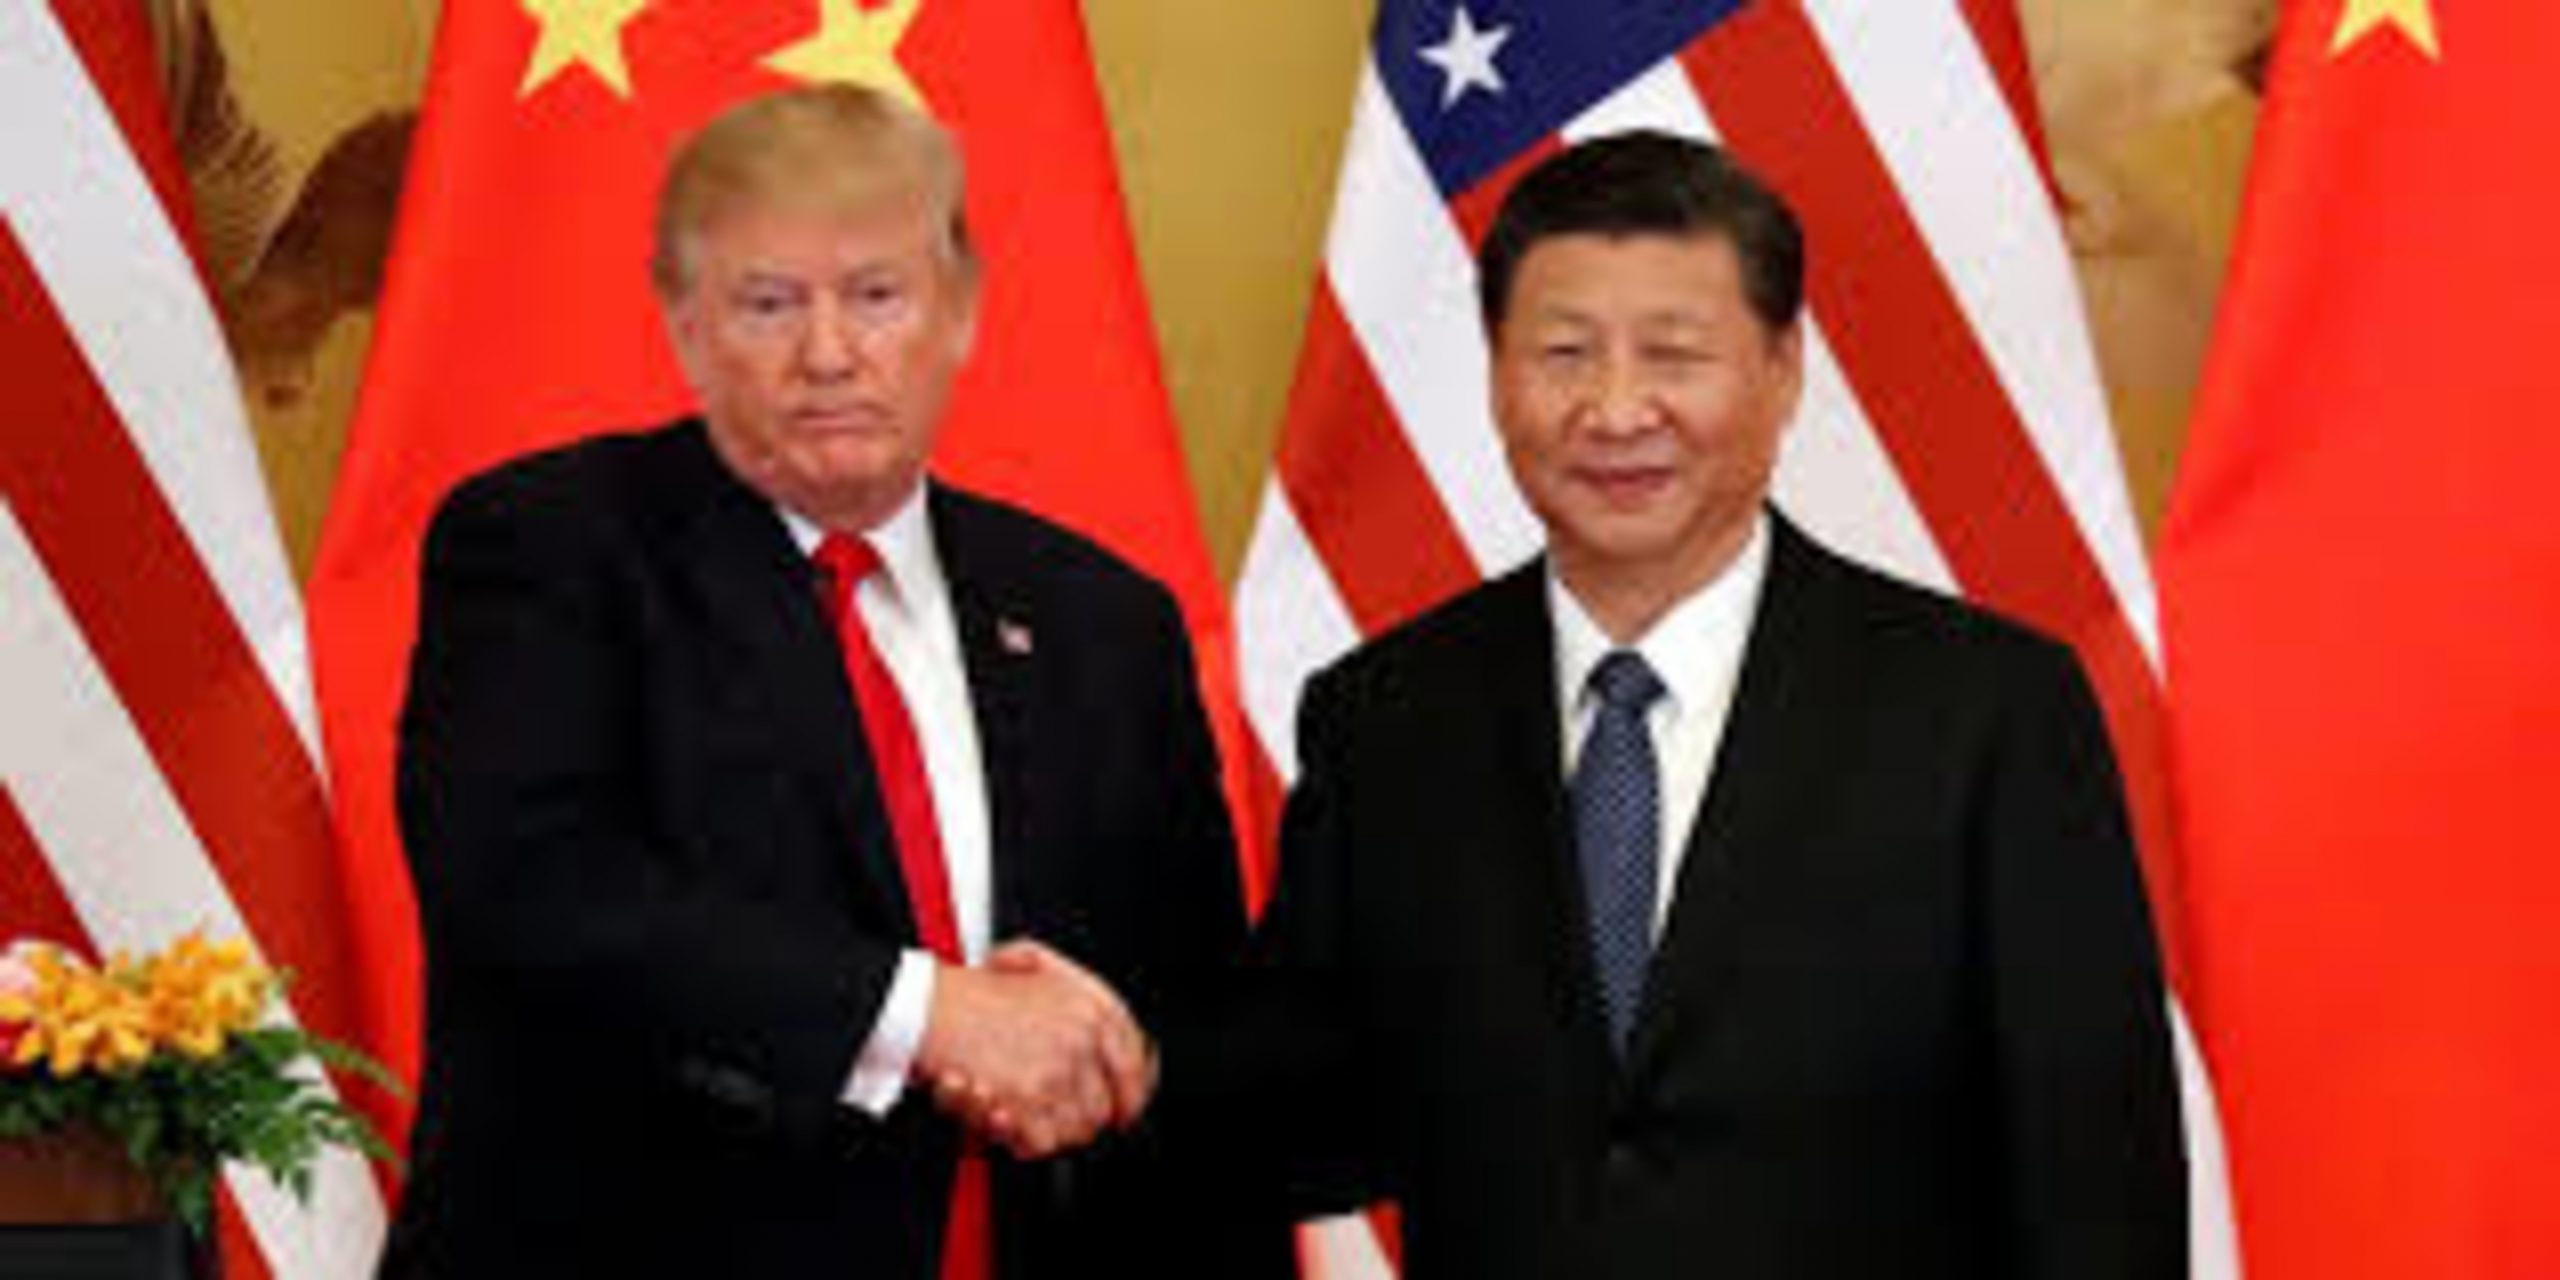 Xi Jinping discusses Coronavirus with Donald Trump